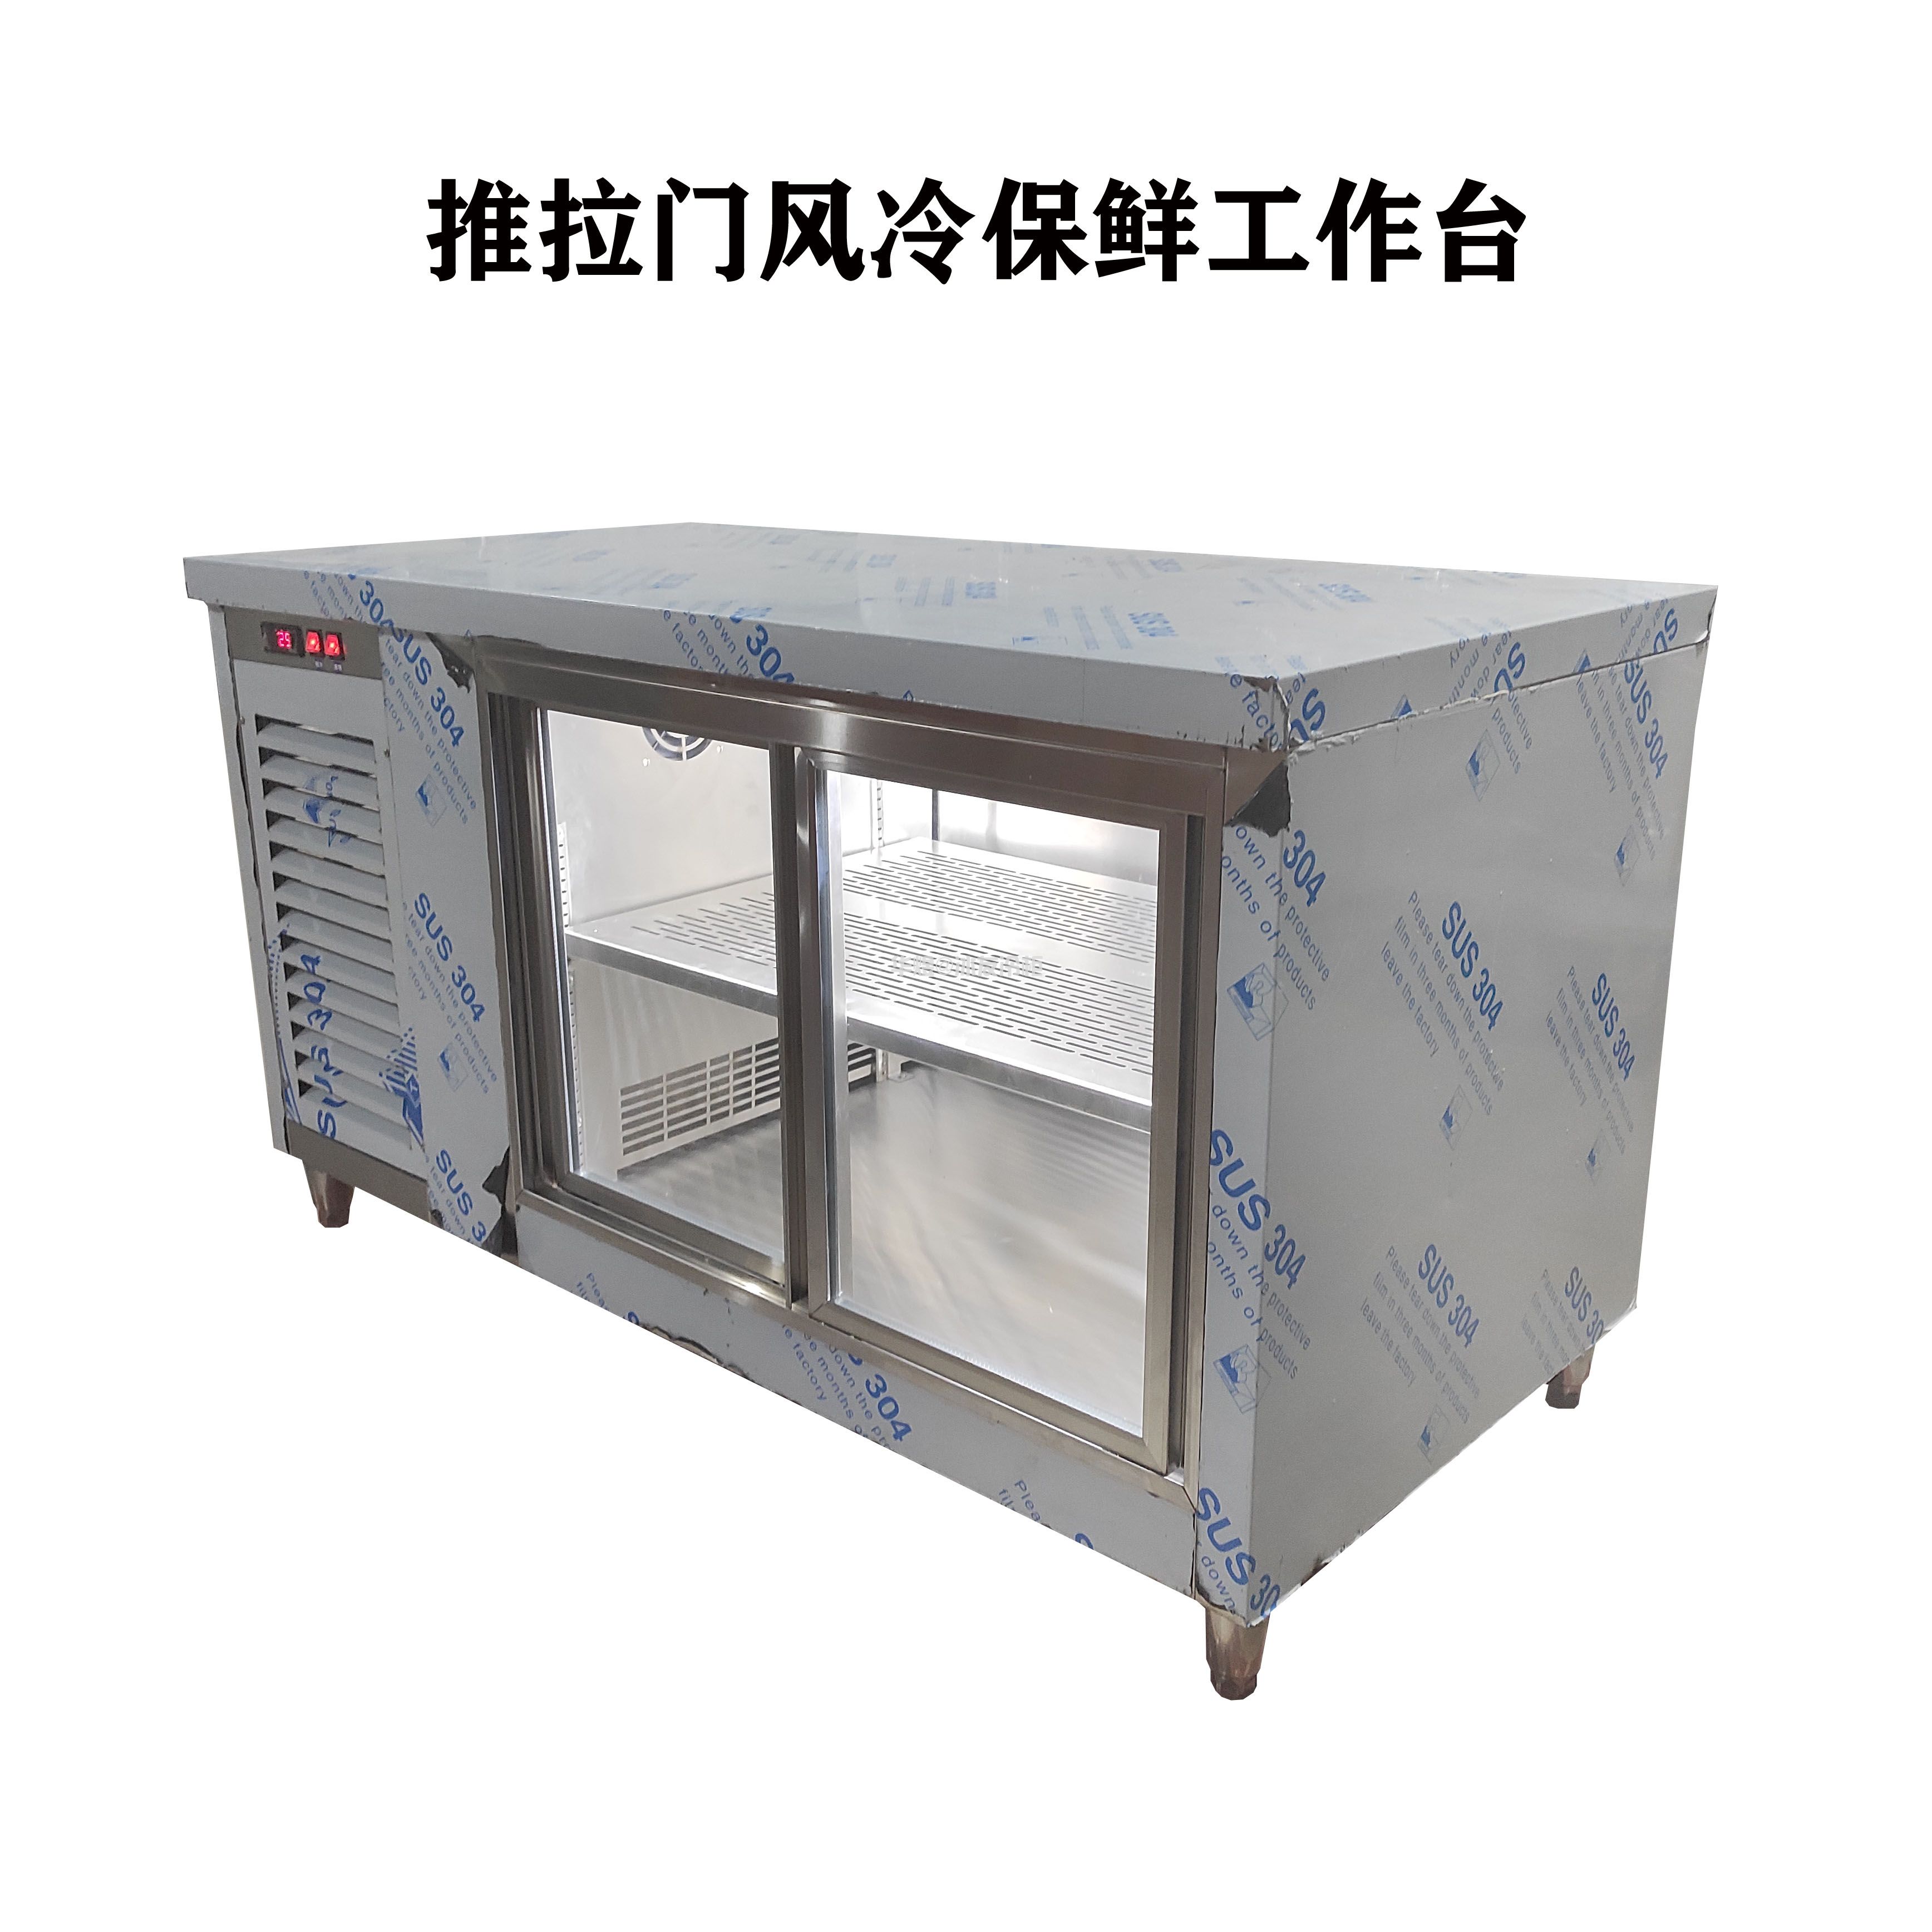 推拉门风冷保鲜工作台奶茶店冷藏操作台玻璃门冷藏工作台